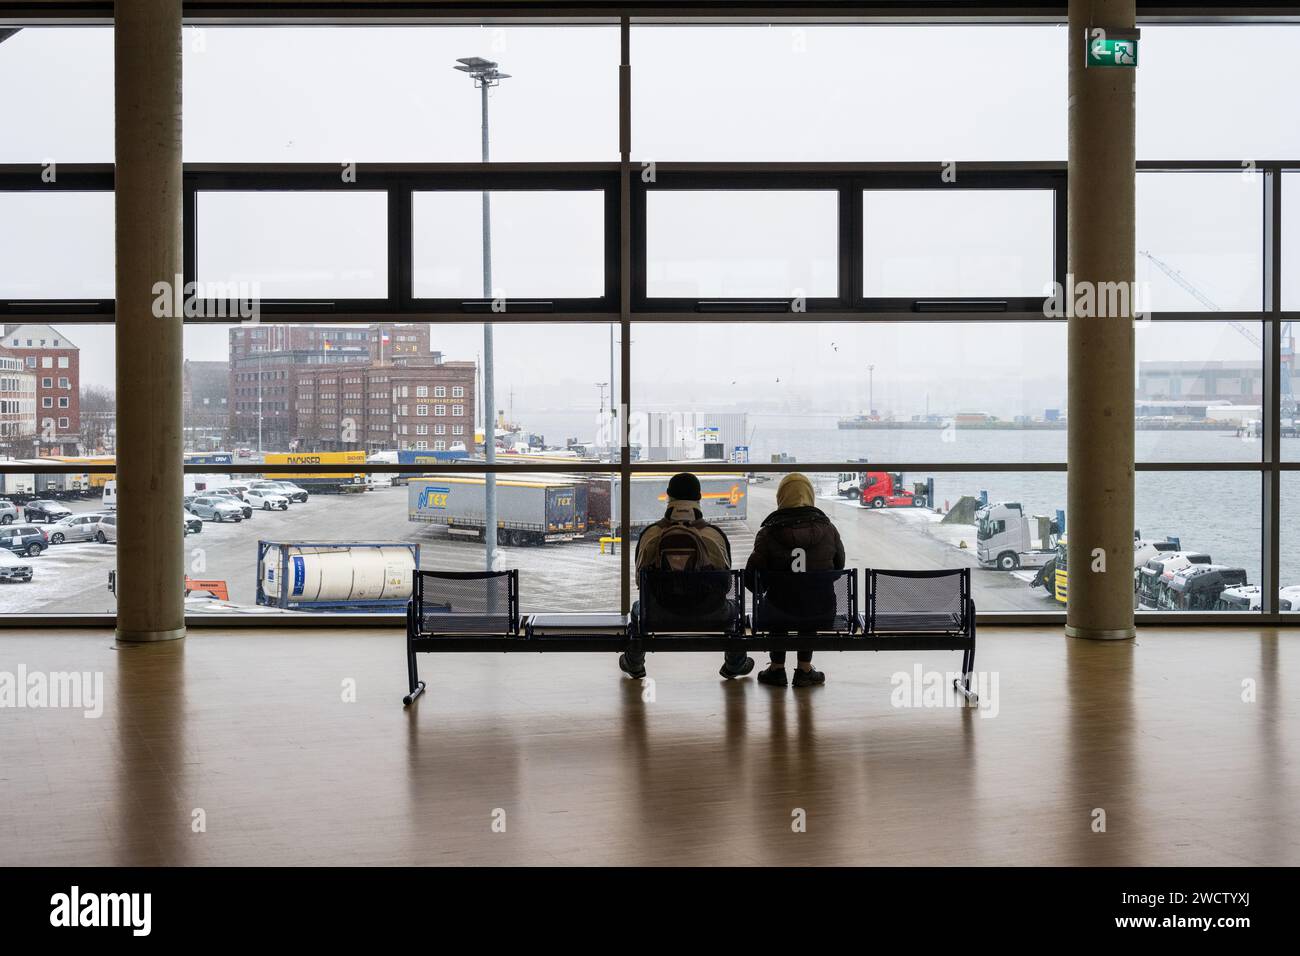 Ein Mann und eine Frau auf einer Sitzbank im Terminalgebäude der Stena Line auf das Panorama des Kieler Hafens blickend Foto Stock